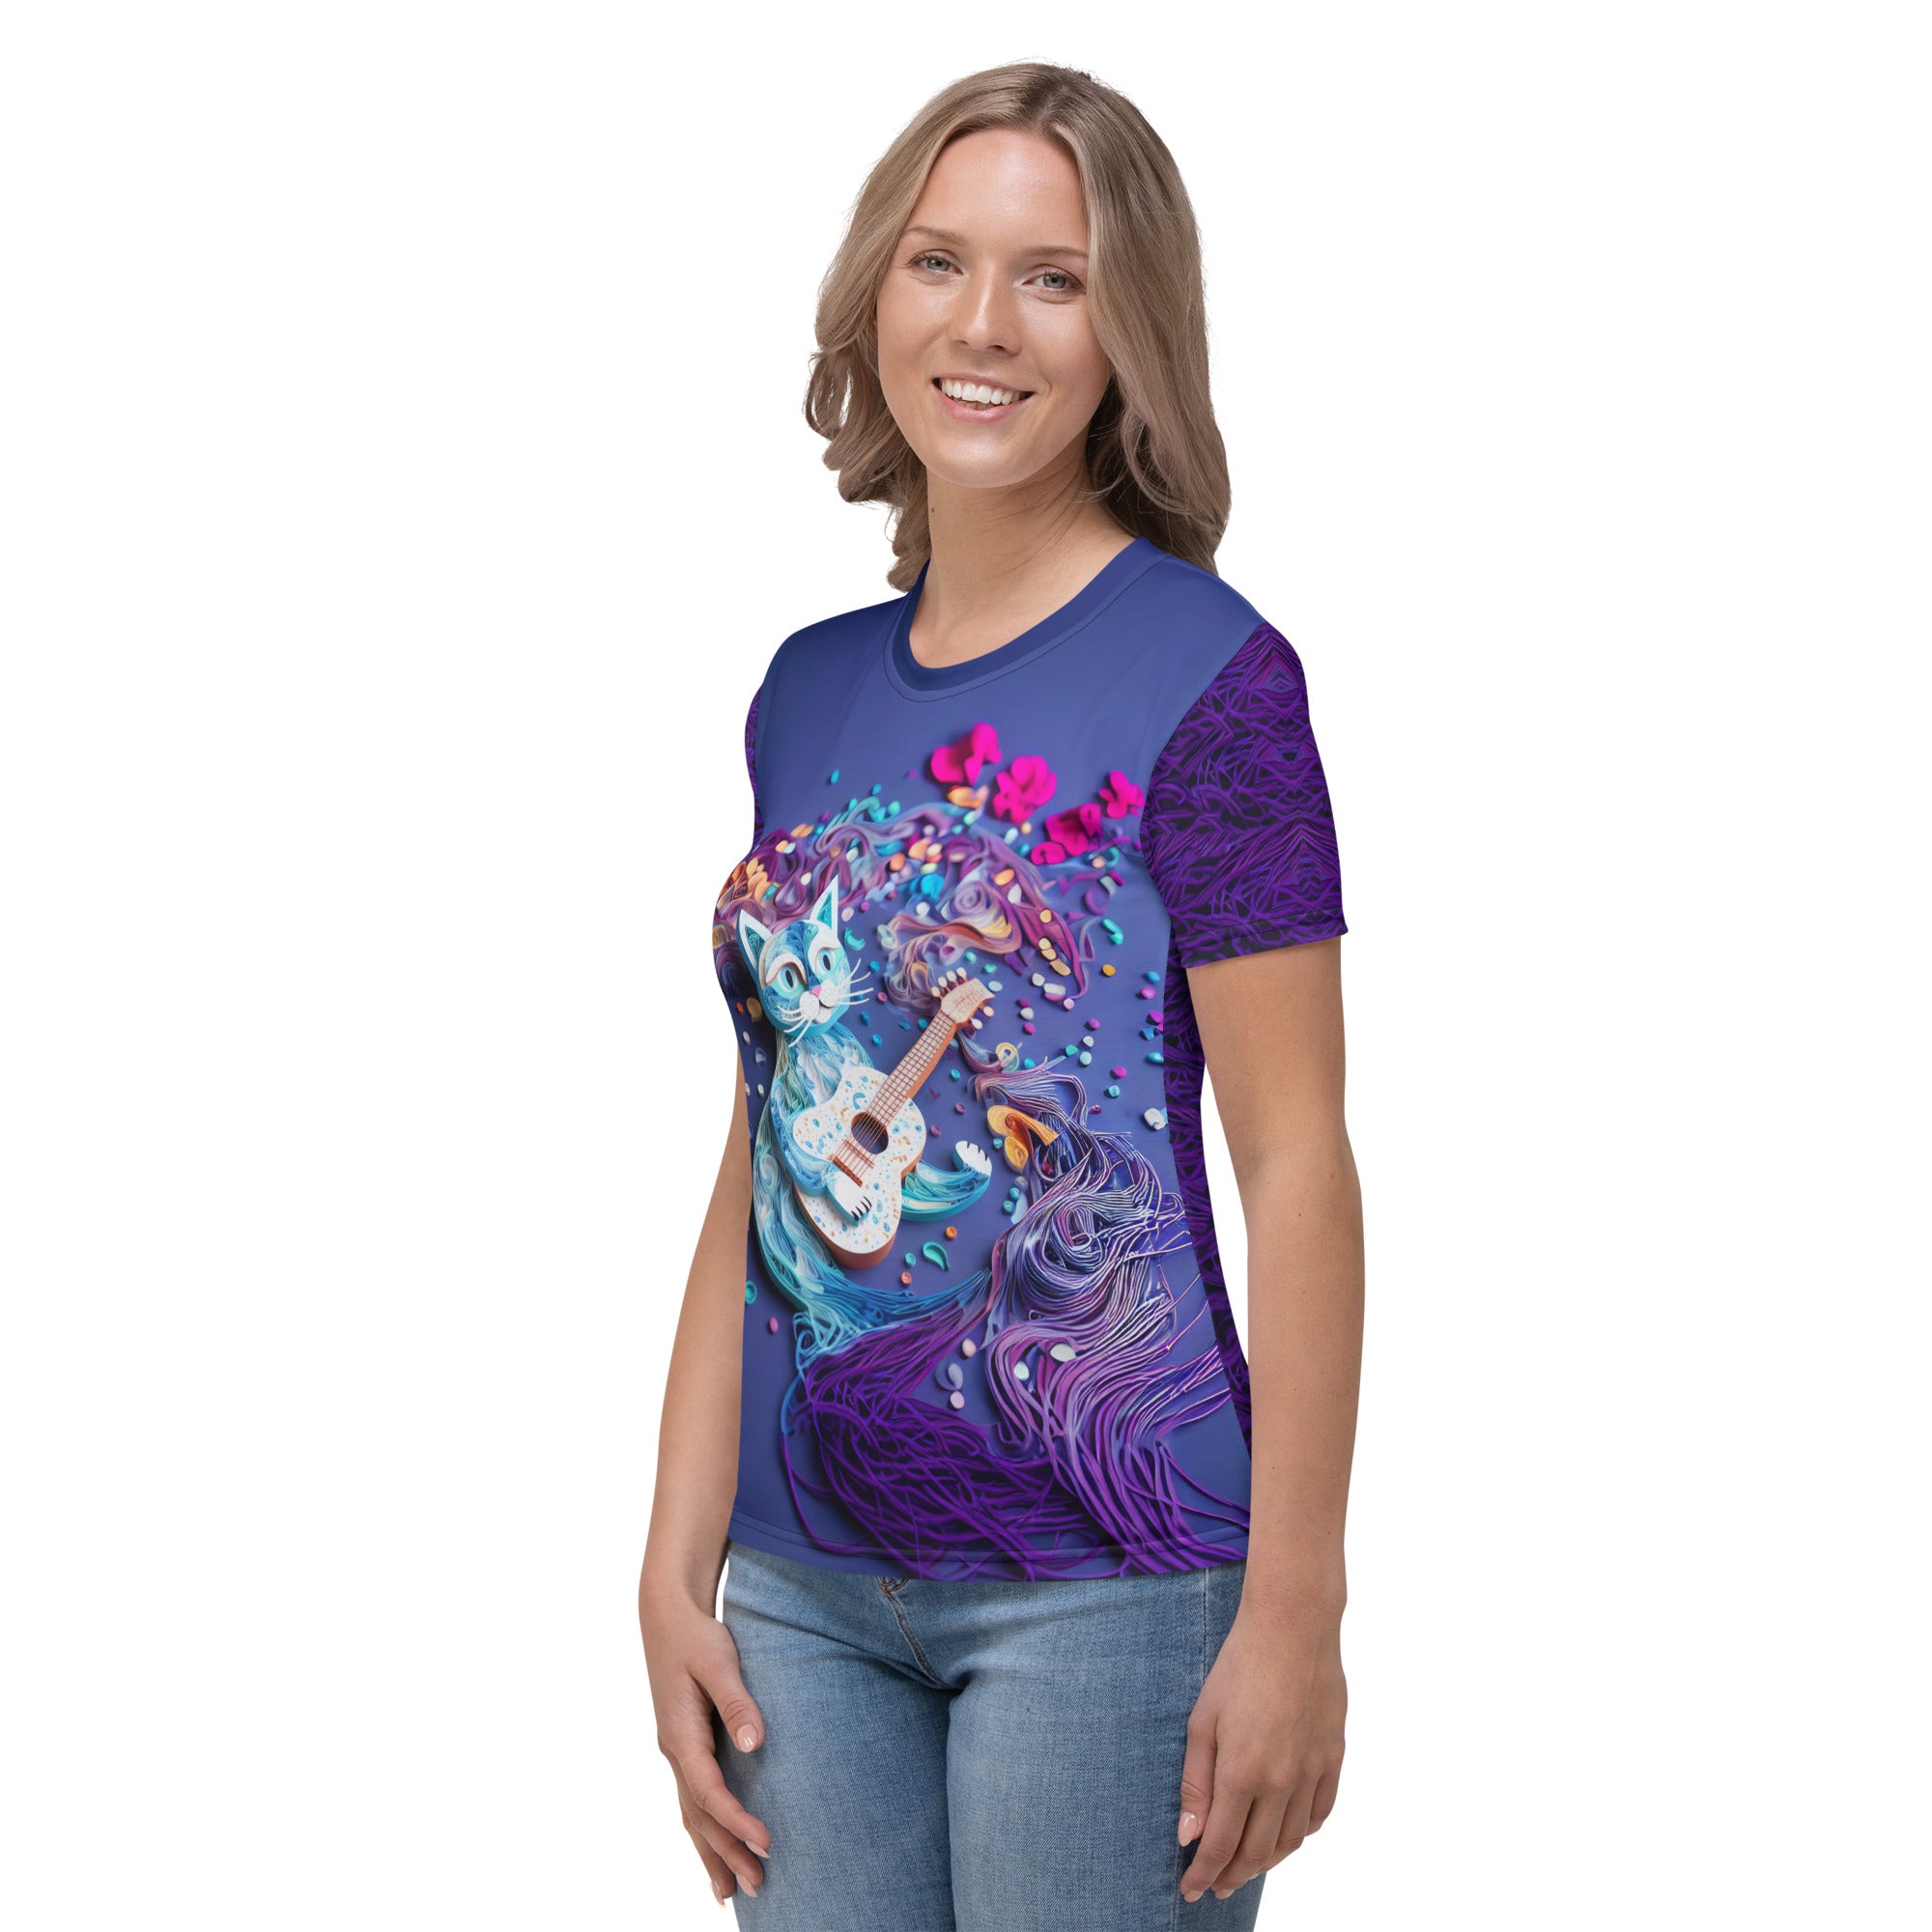 Women's crew neck t-shirt featuring a fiery phoenix design.